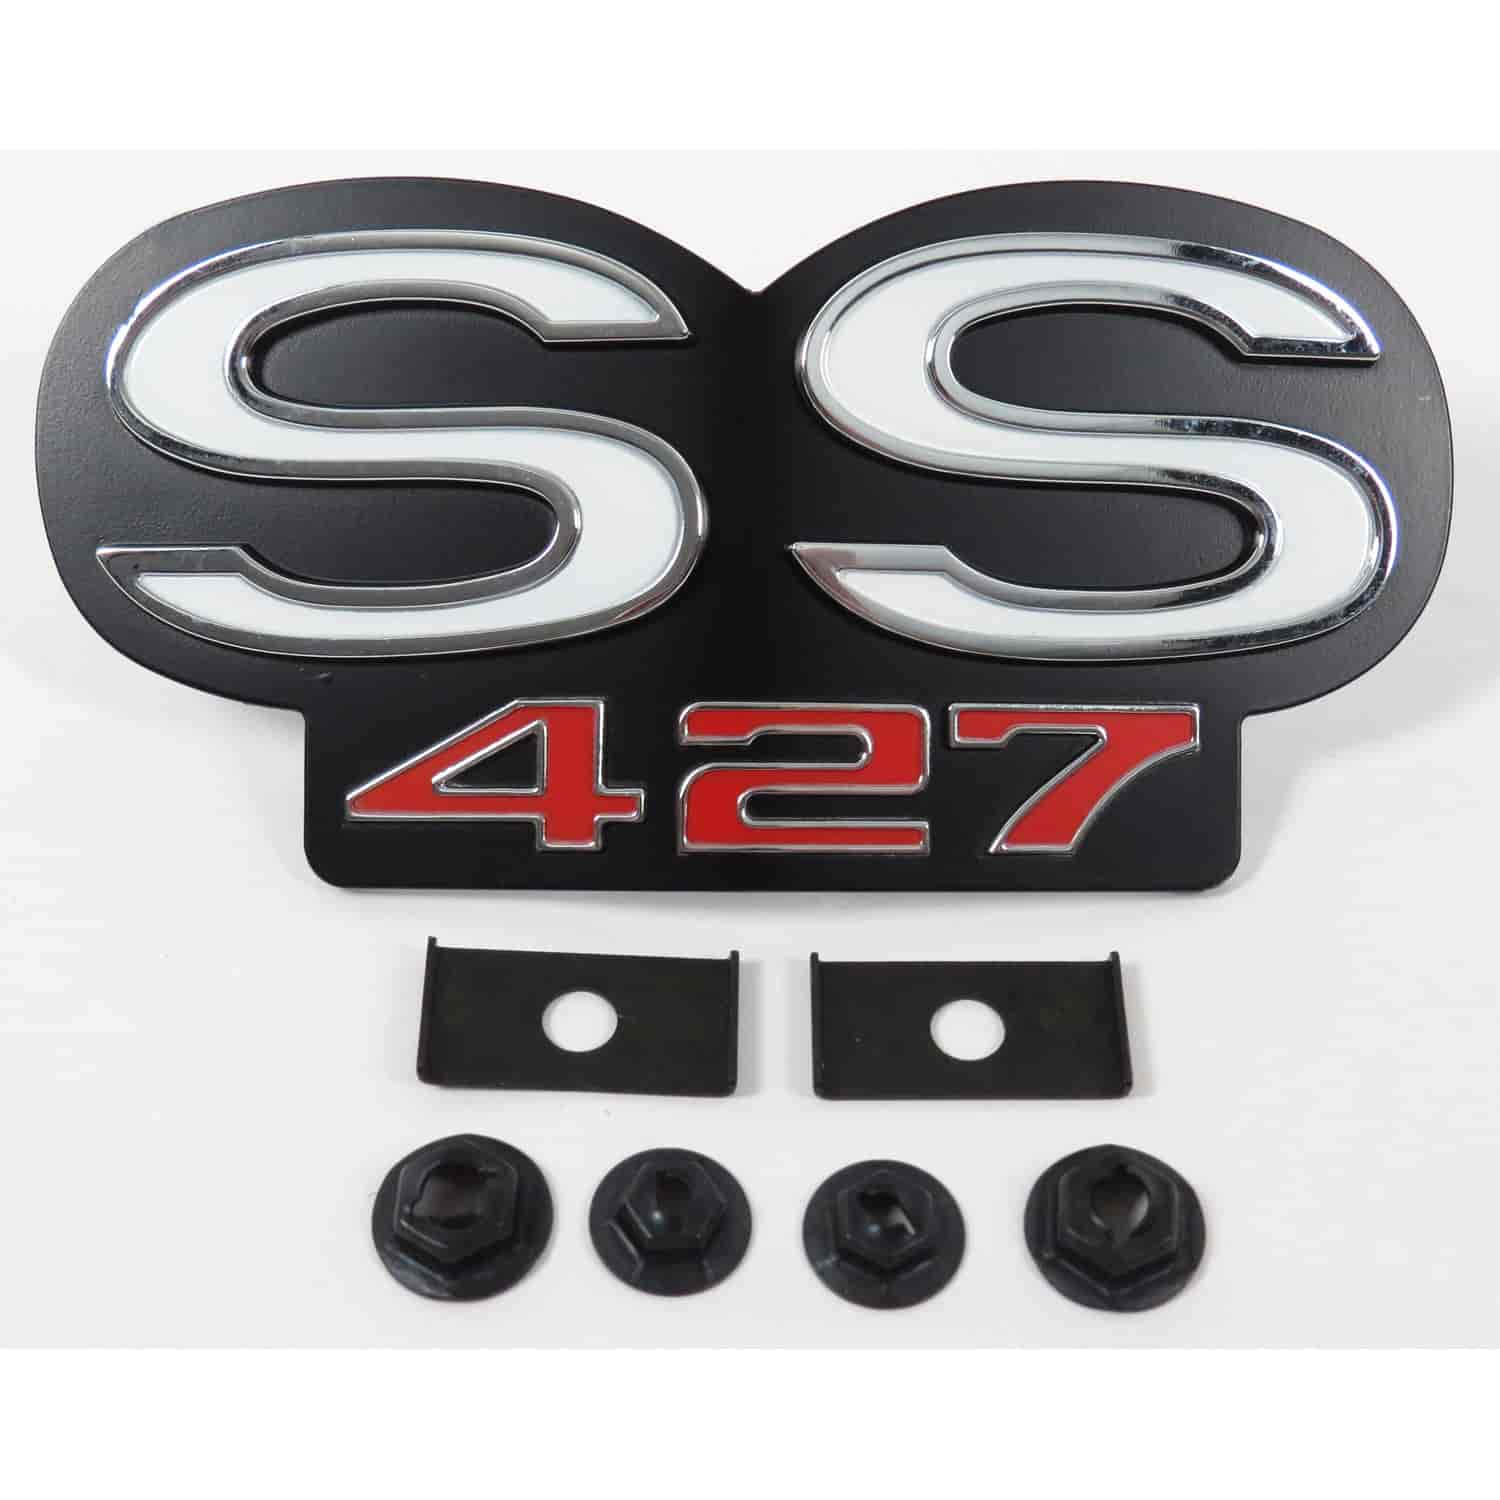 Grille Emblem "SS 427"